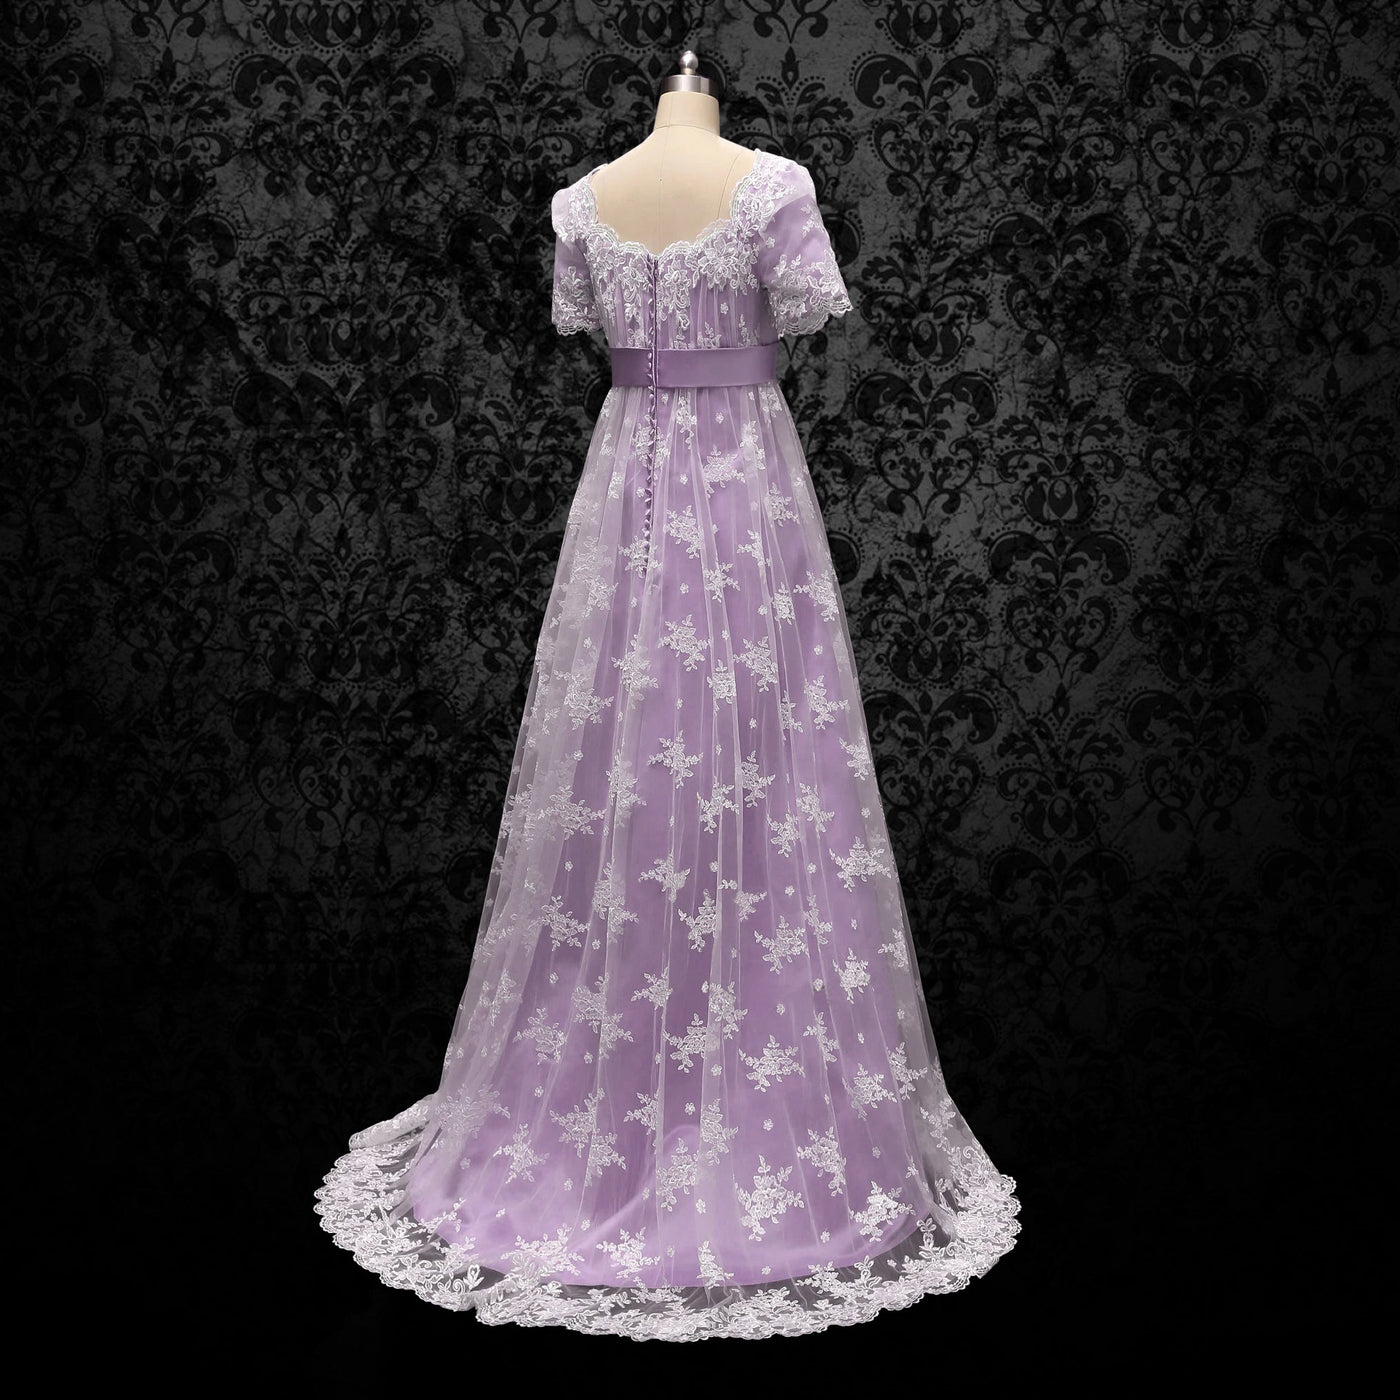 Bridgerton Lavender Regency Wedding Dress With Lace- Regency Era Purple Ball Gown Plus Size - WonderlandByLilian